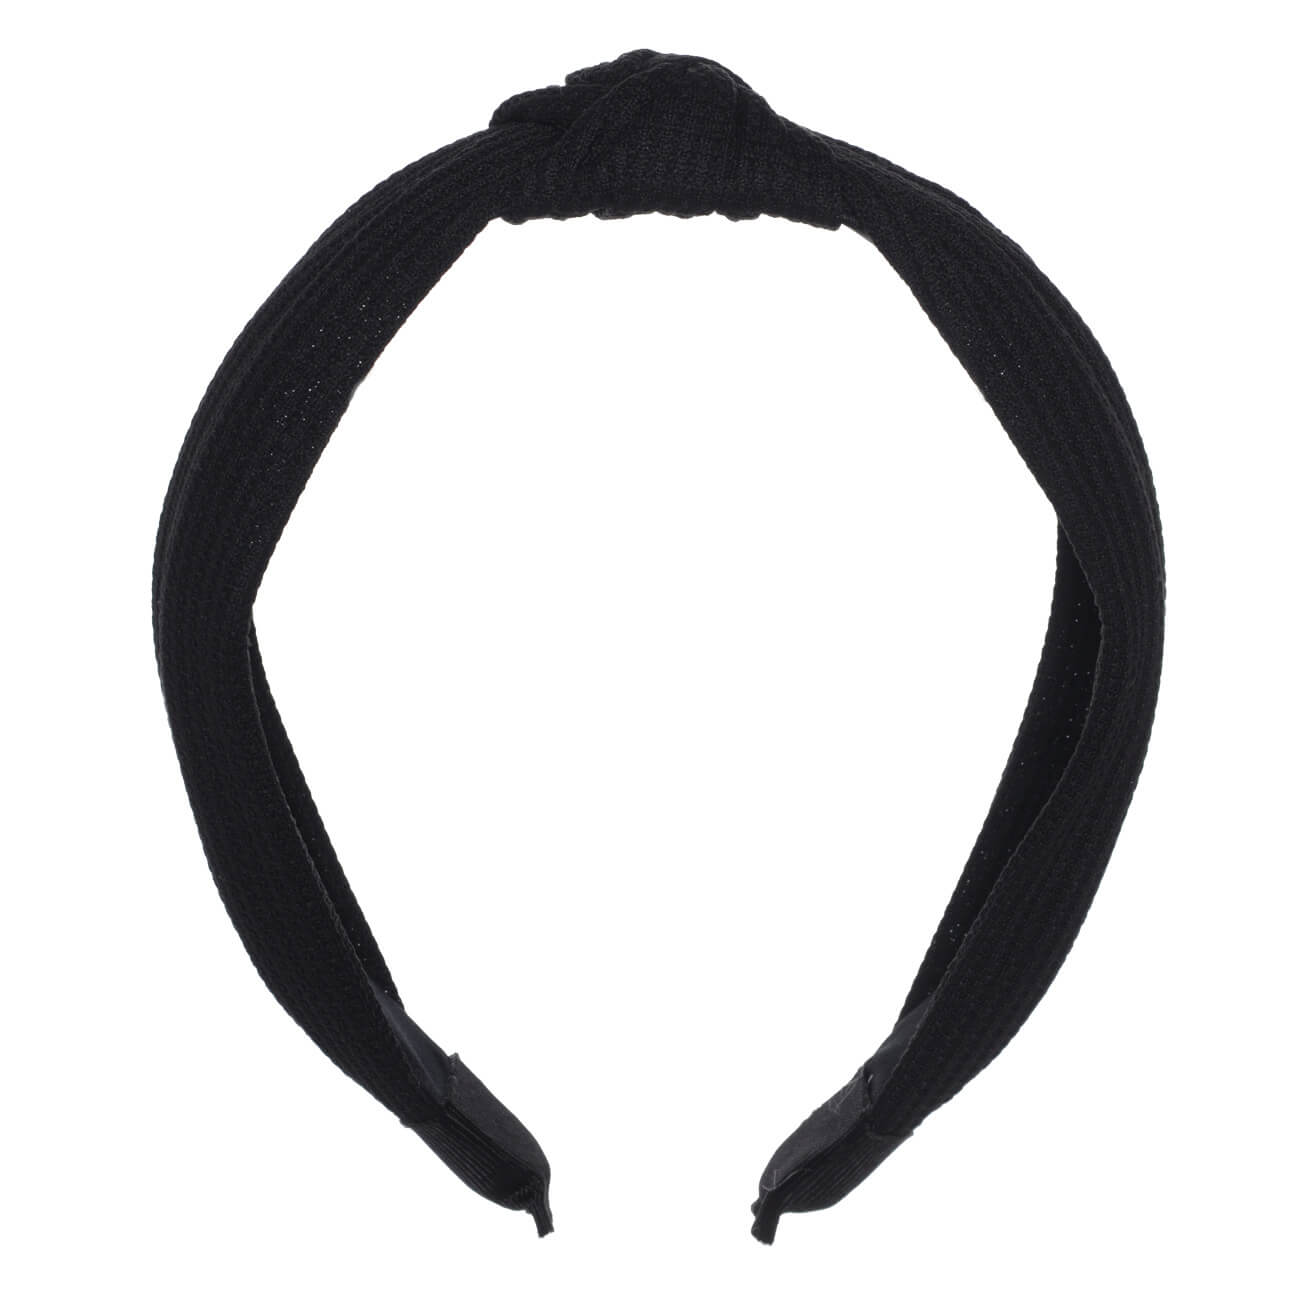 Ободок для волос, 13х15 см, полиэстер/пластик, черный, Basic ободок ёлочка подарок